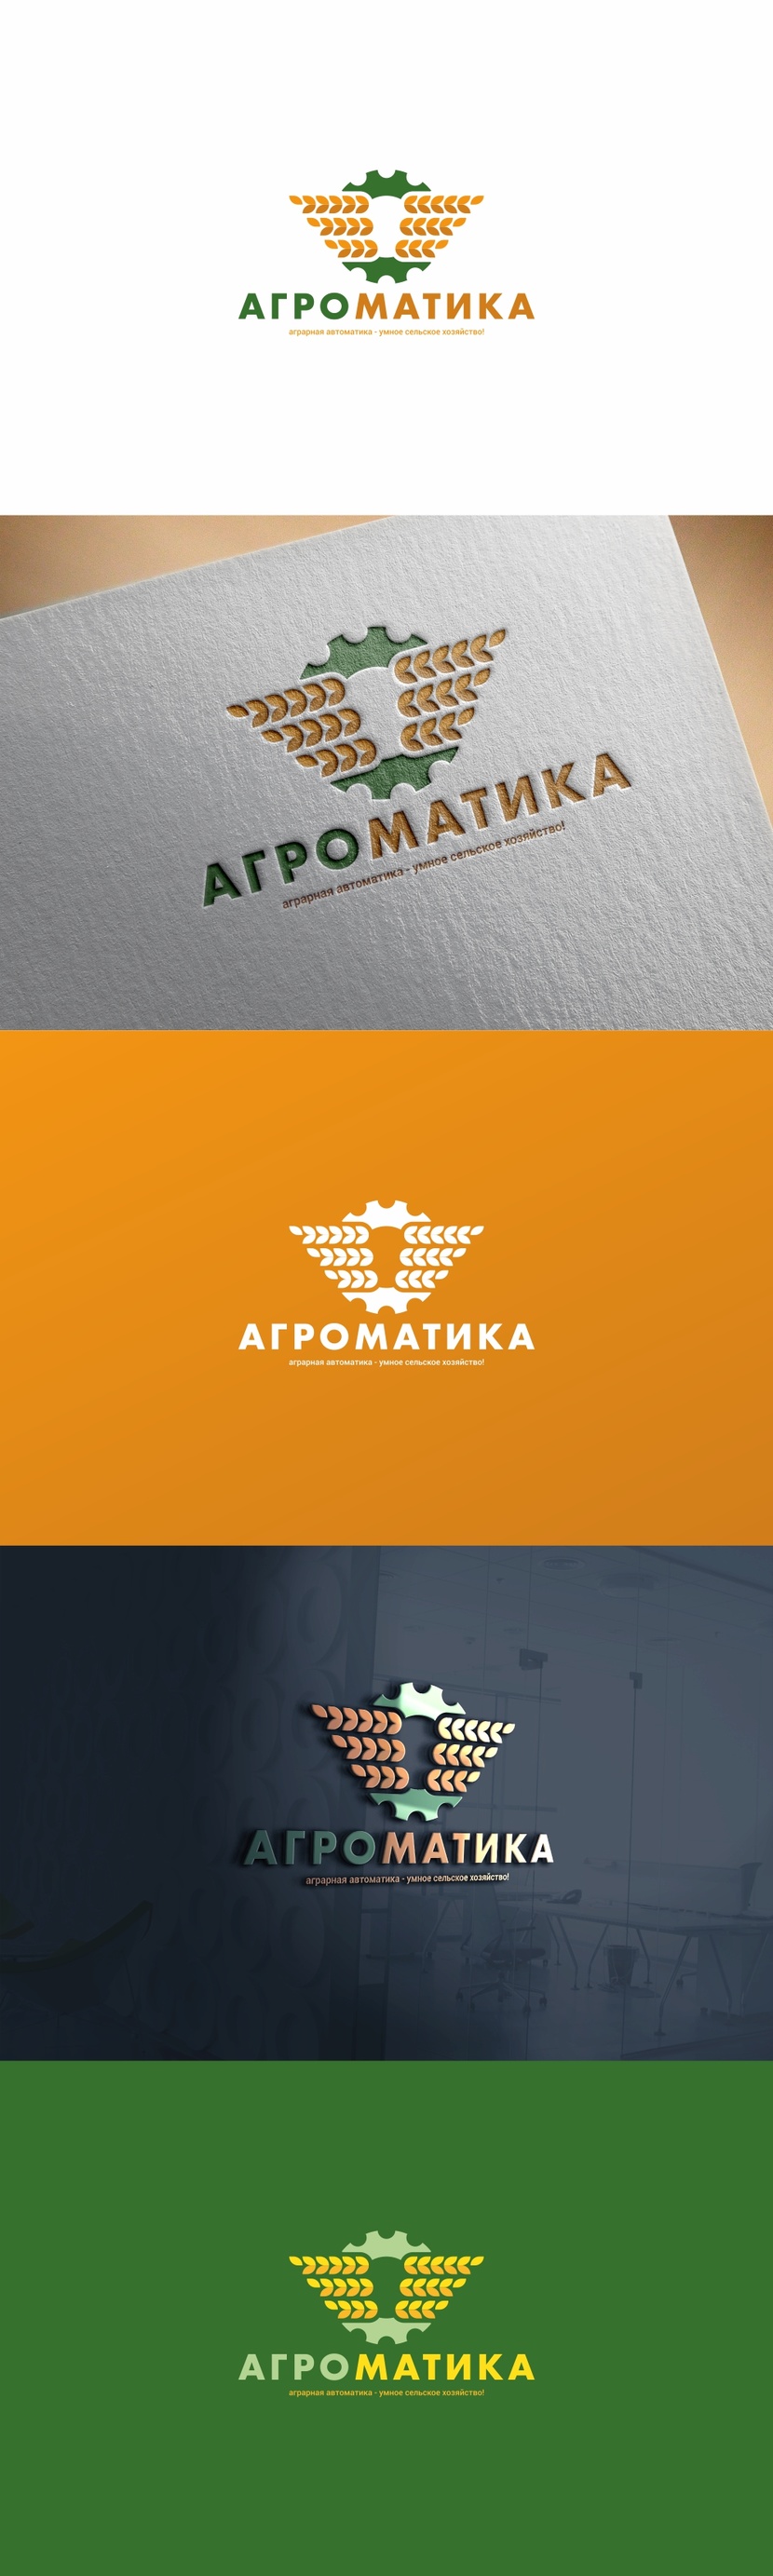 Создание логотипа и фирменного стиля для производственной компании в сфере производства Сельхозоборудования  -  автор Андрей Мартынович